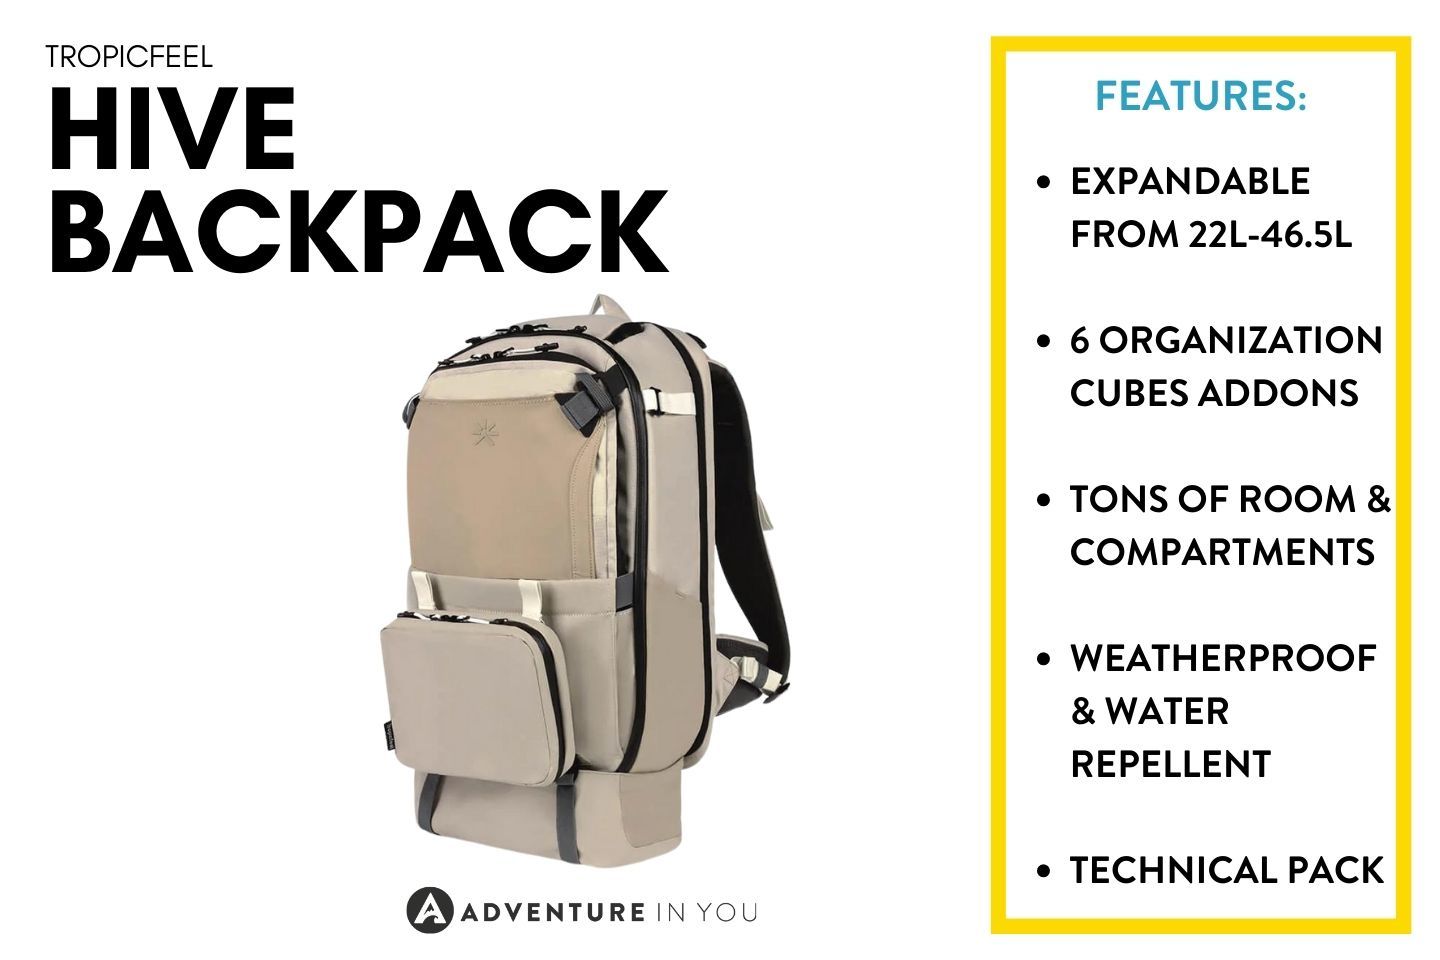 Tropicfeel Backpack Review